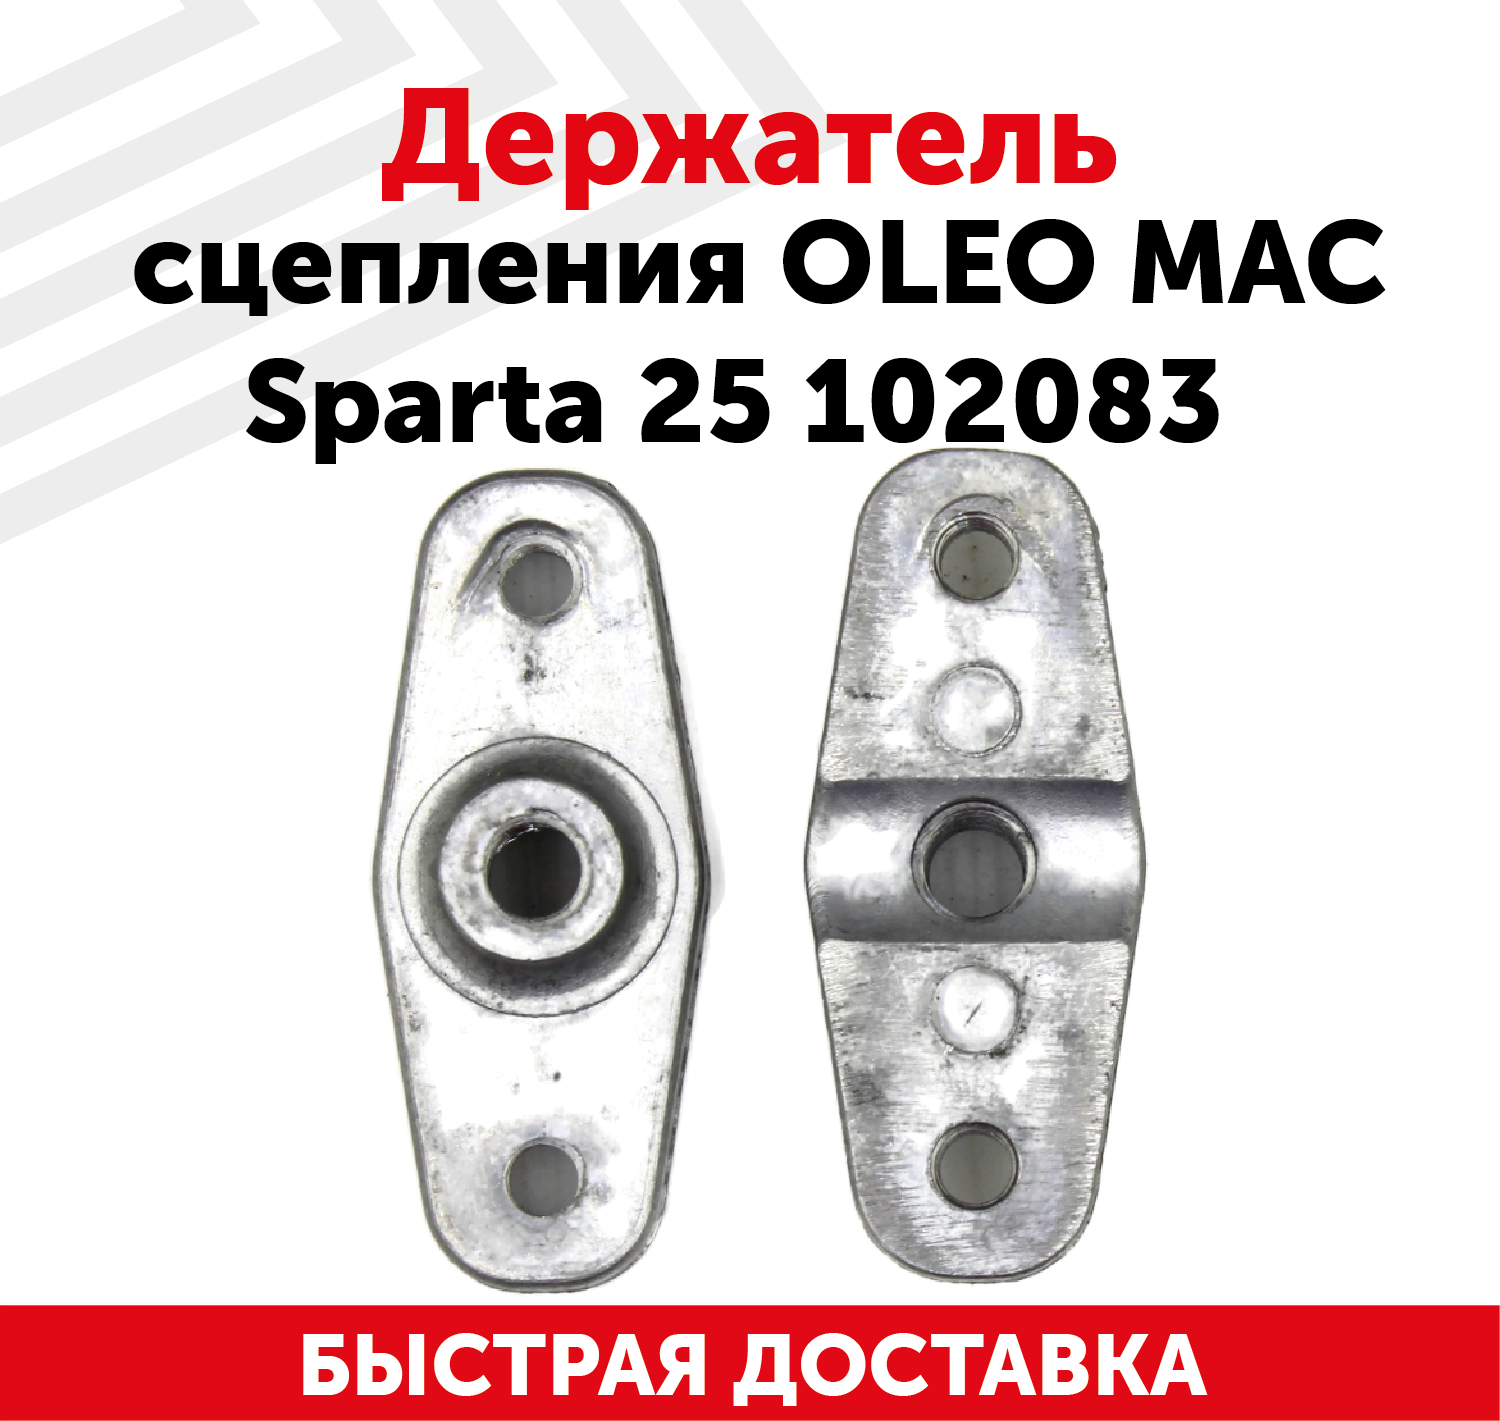 Держатель сцепления Oleo Mac Sparta 25 102083